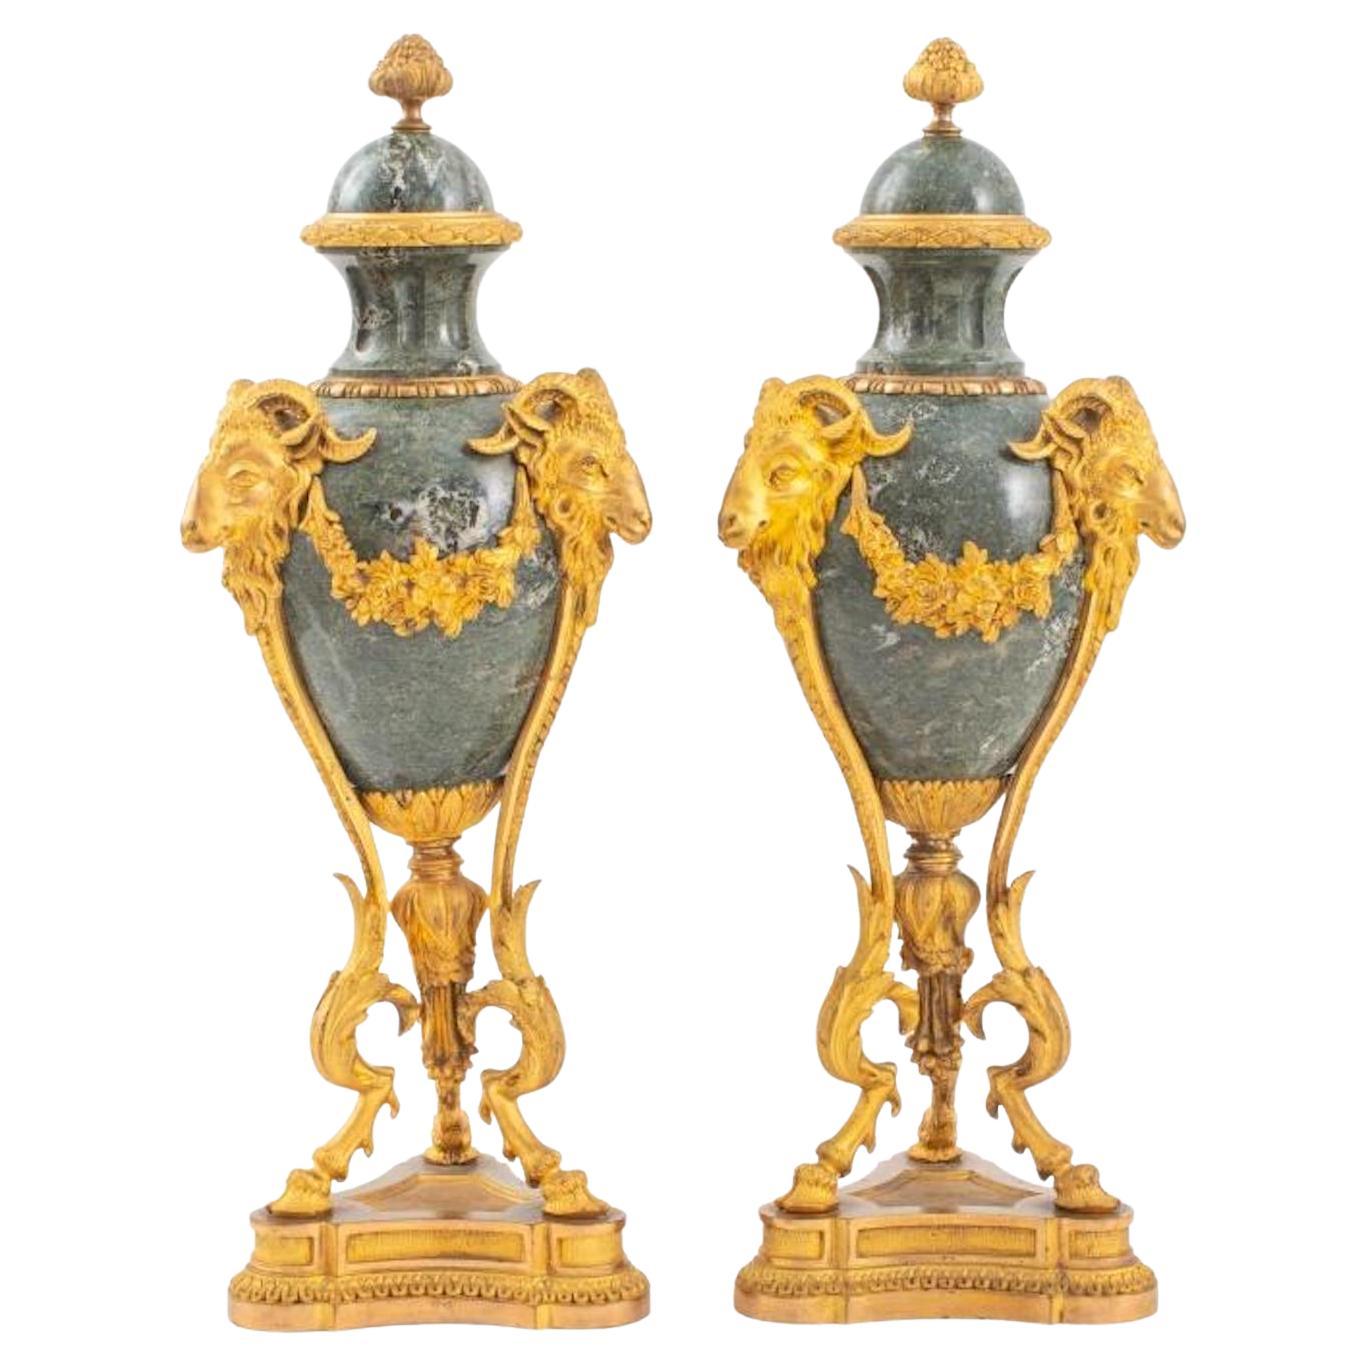 Paire de garnitures / urnes en bronze doré / marbre rouge du 19e siècle